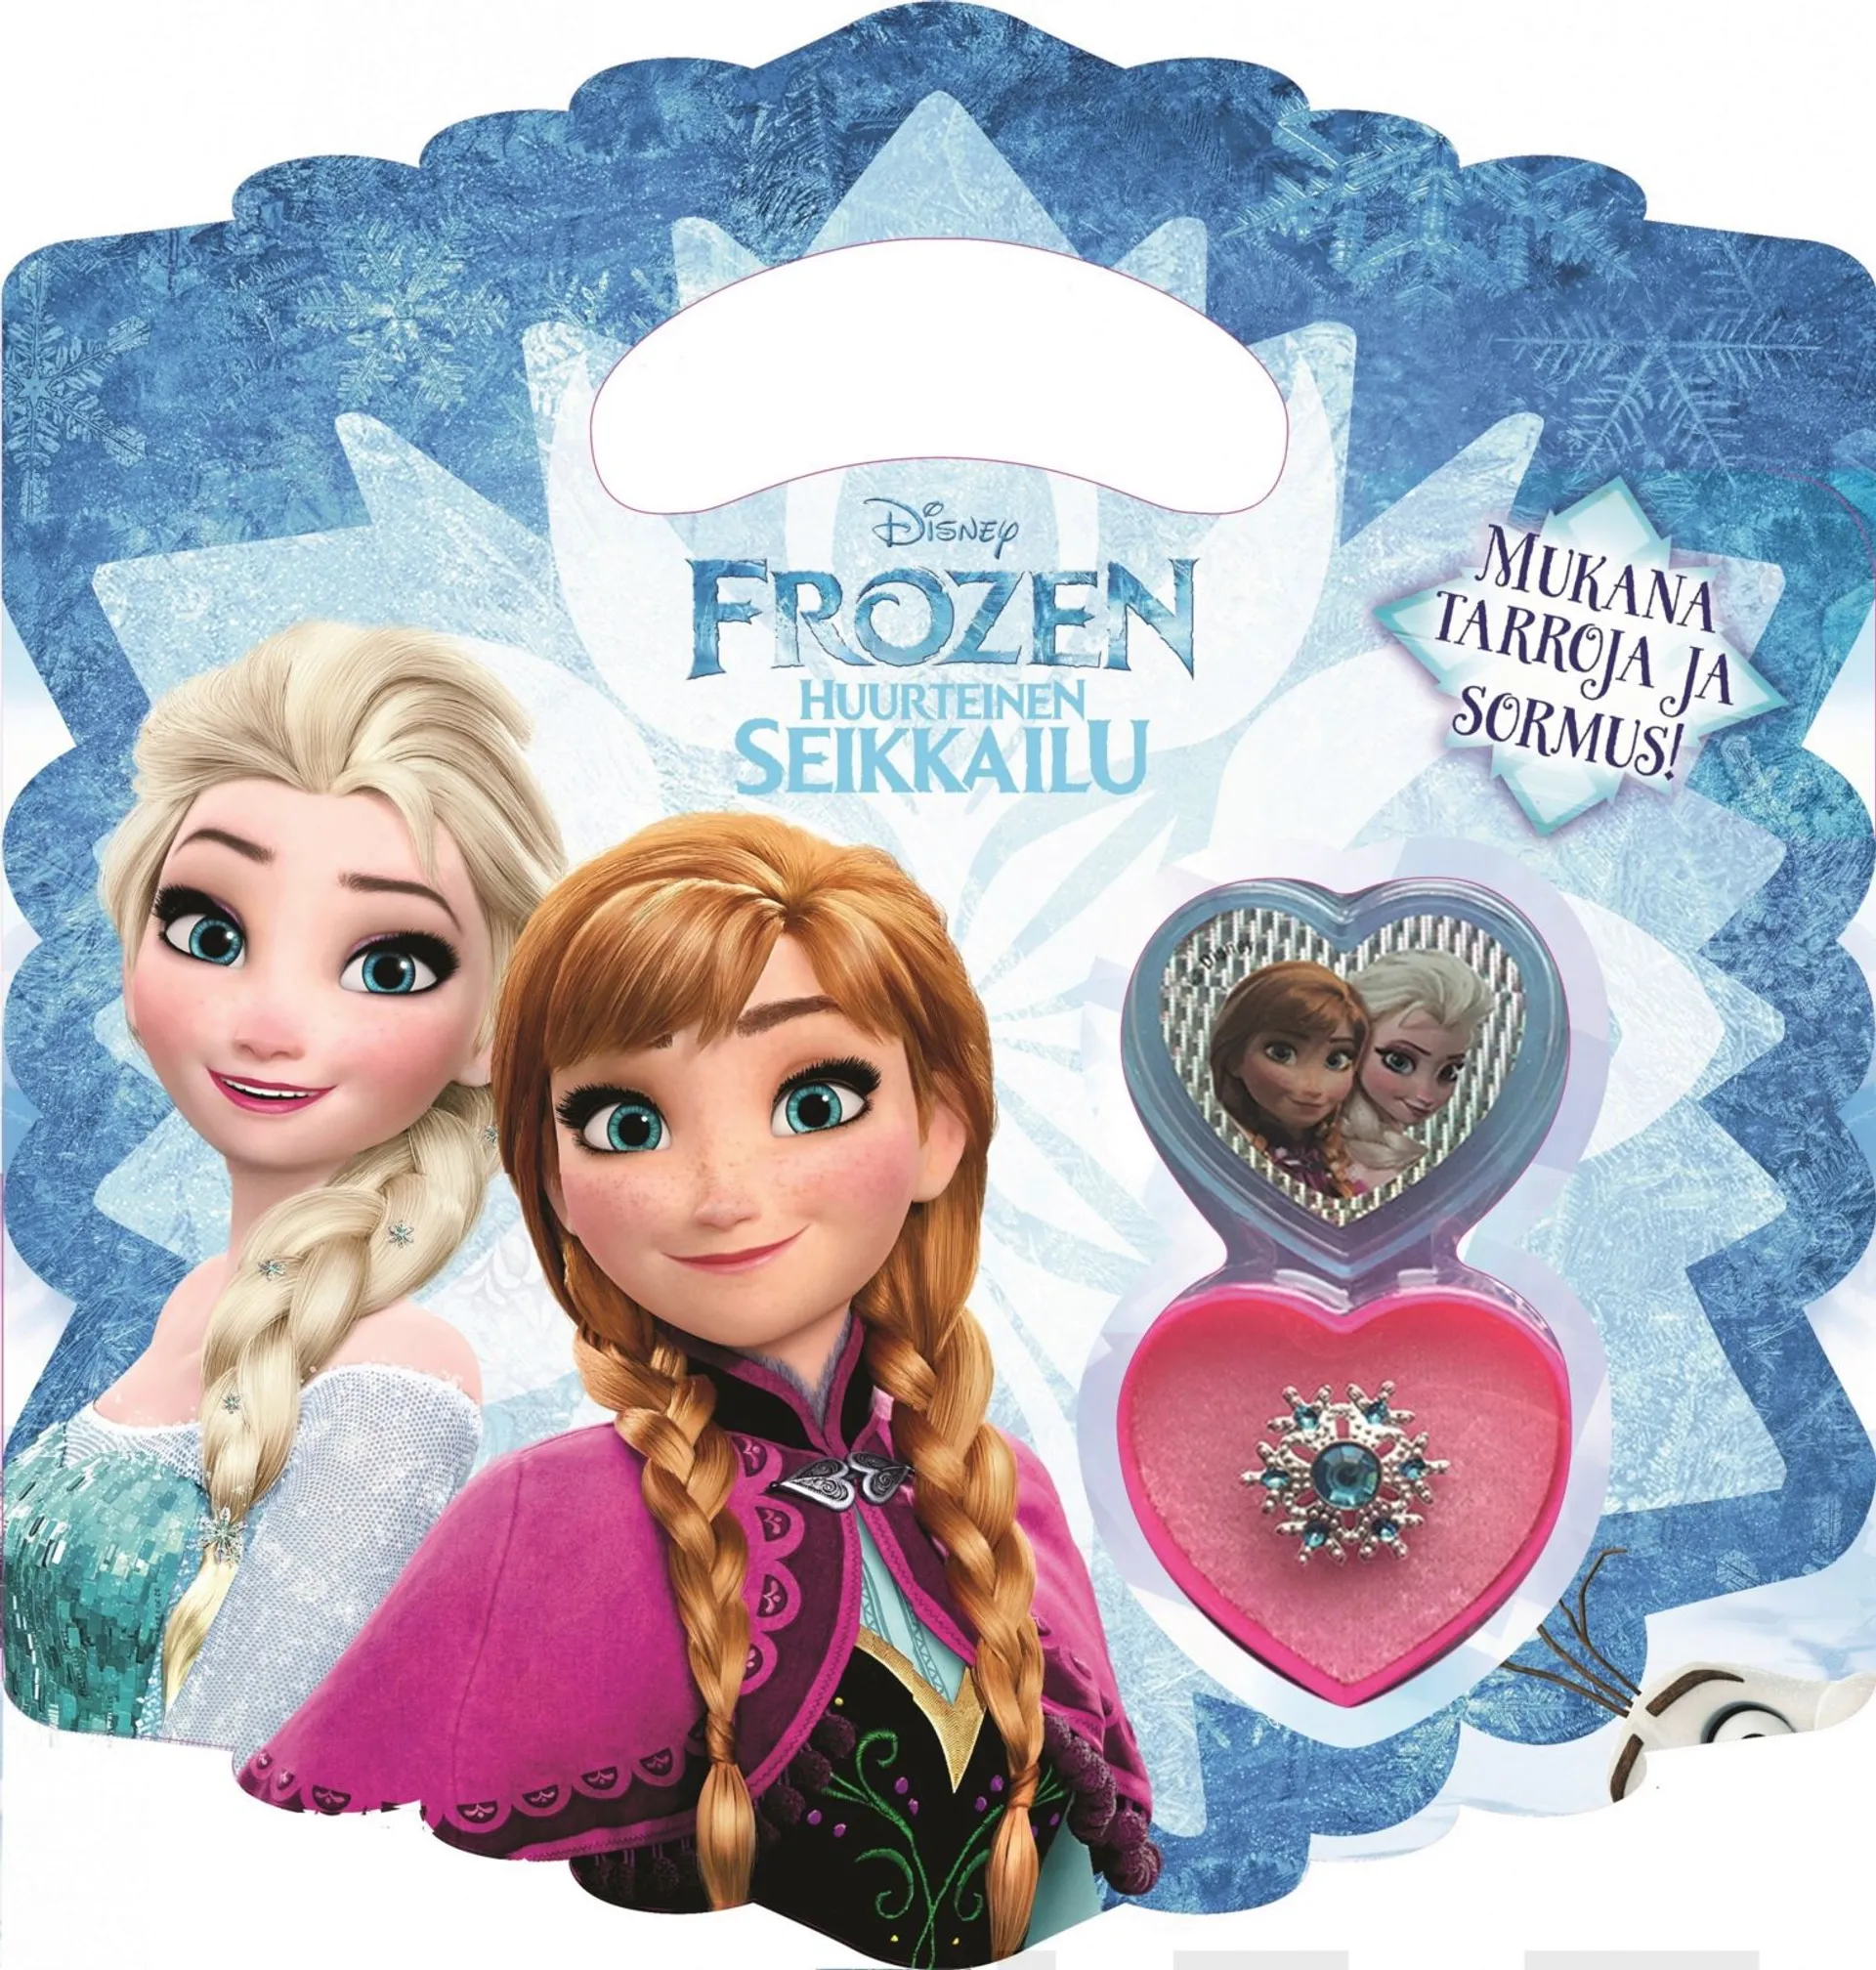 Disney Frozen Huurteinen seikkailu - Talvinen tarina